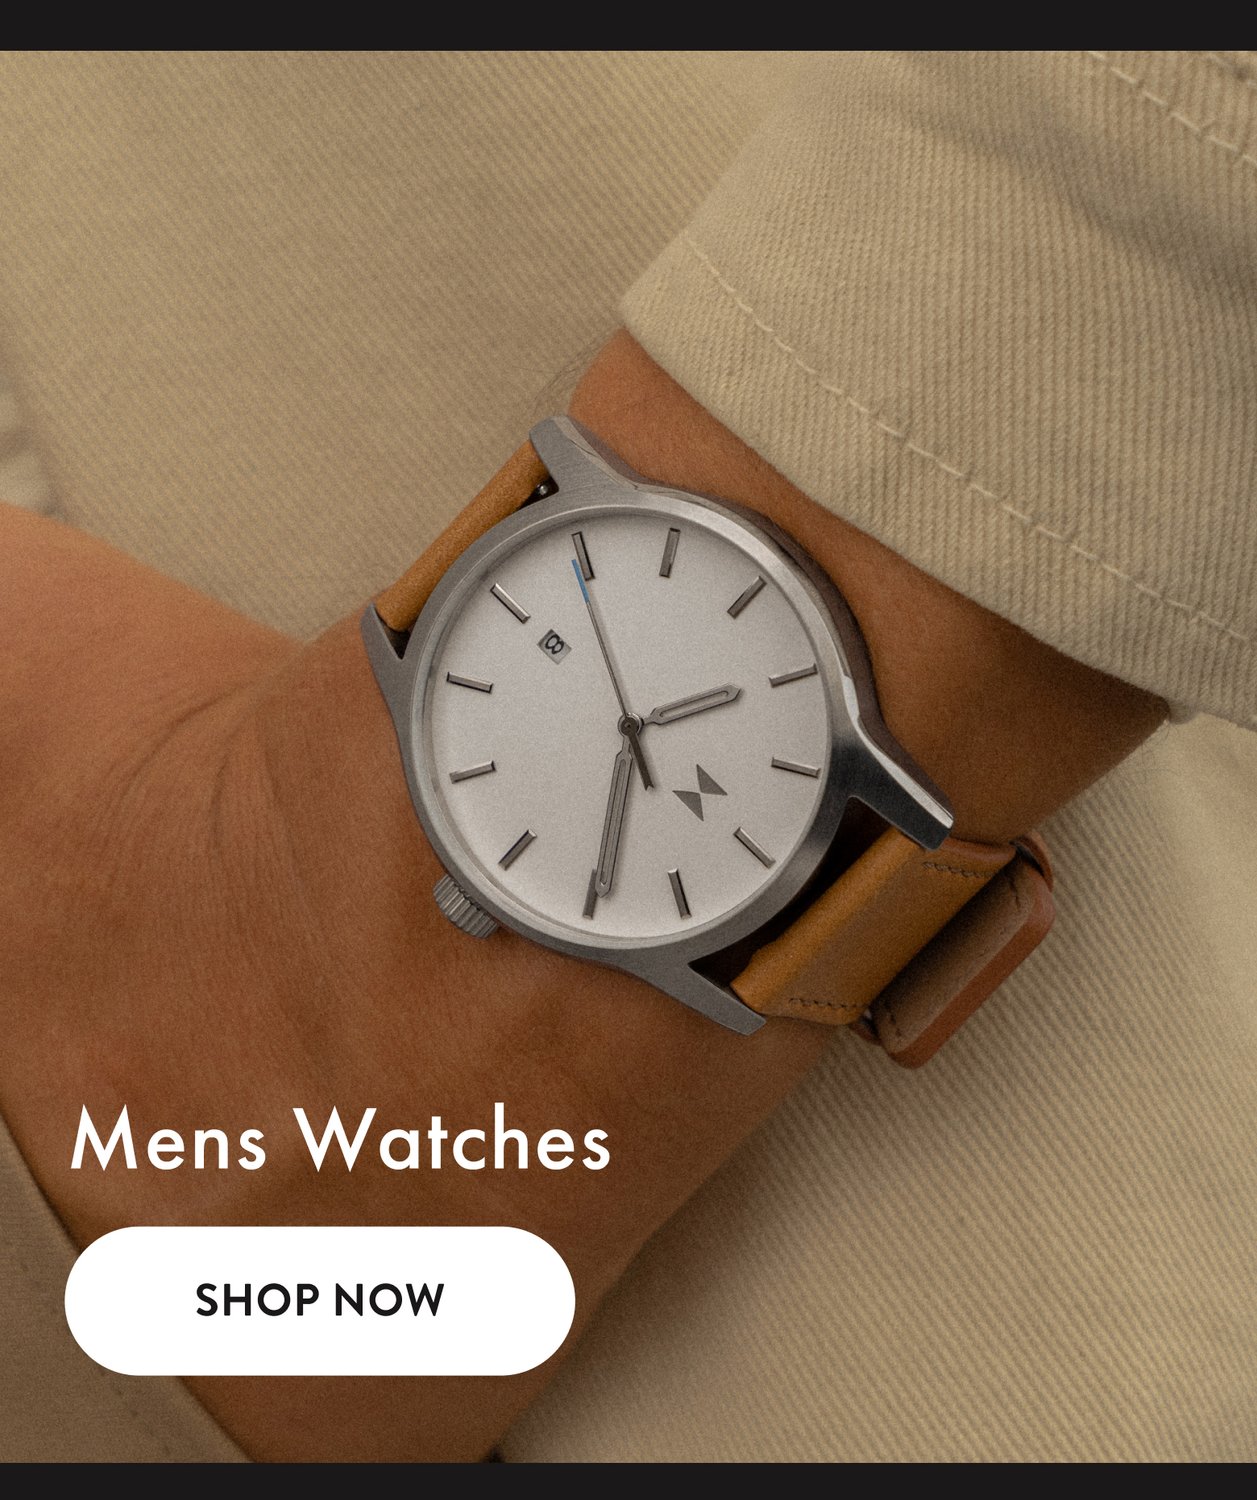 MVMT men's watches - watch on wrist